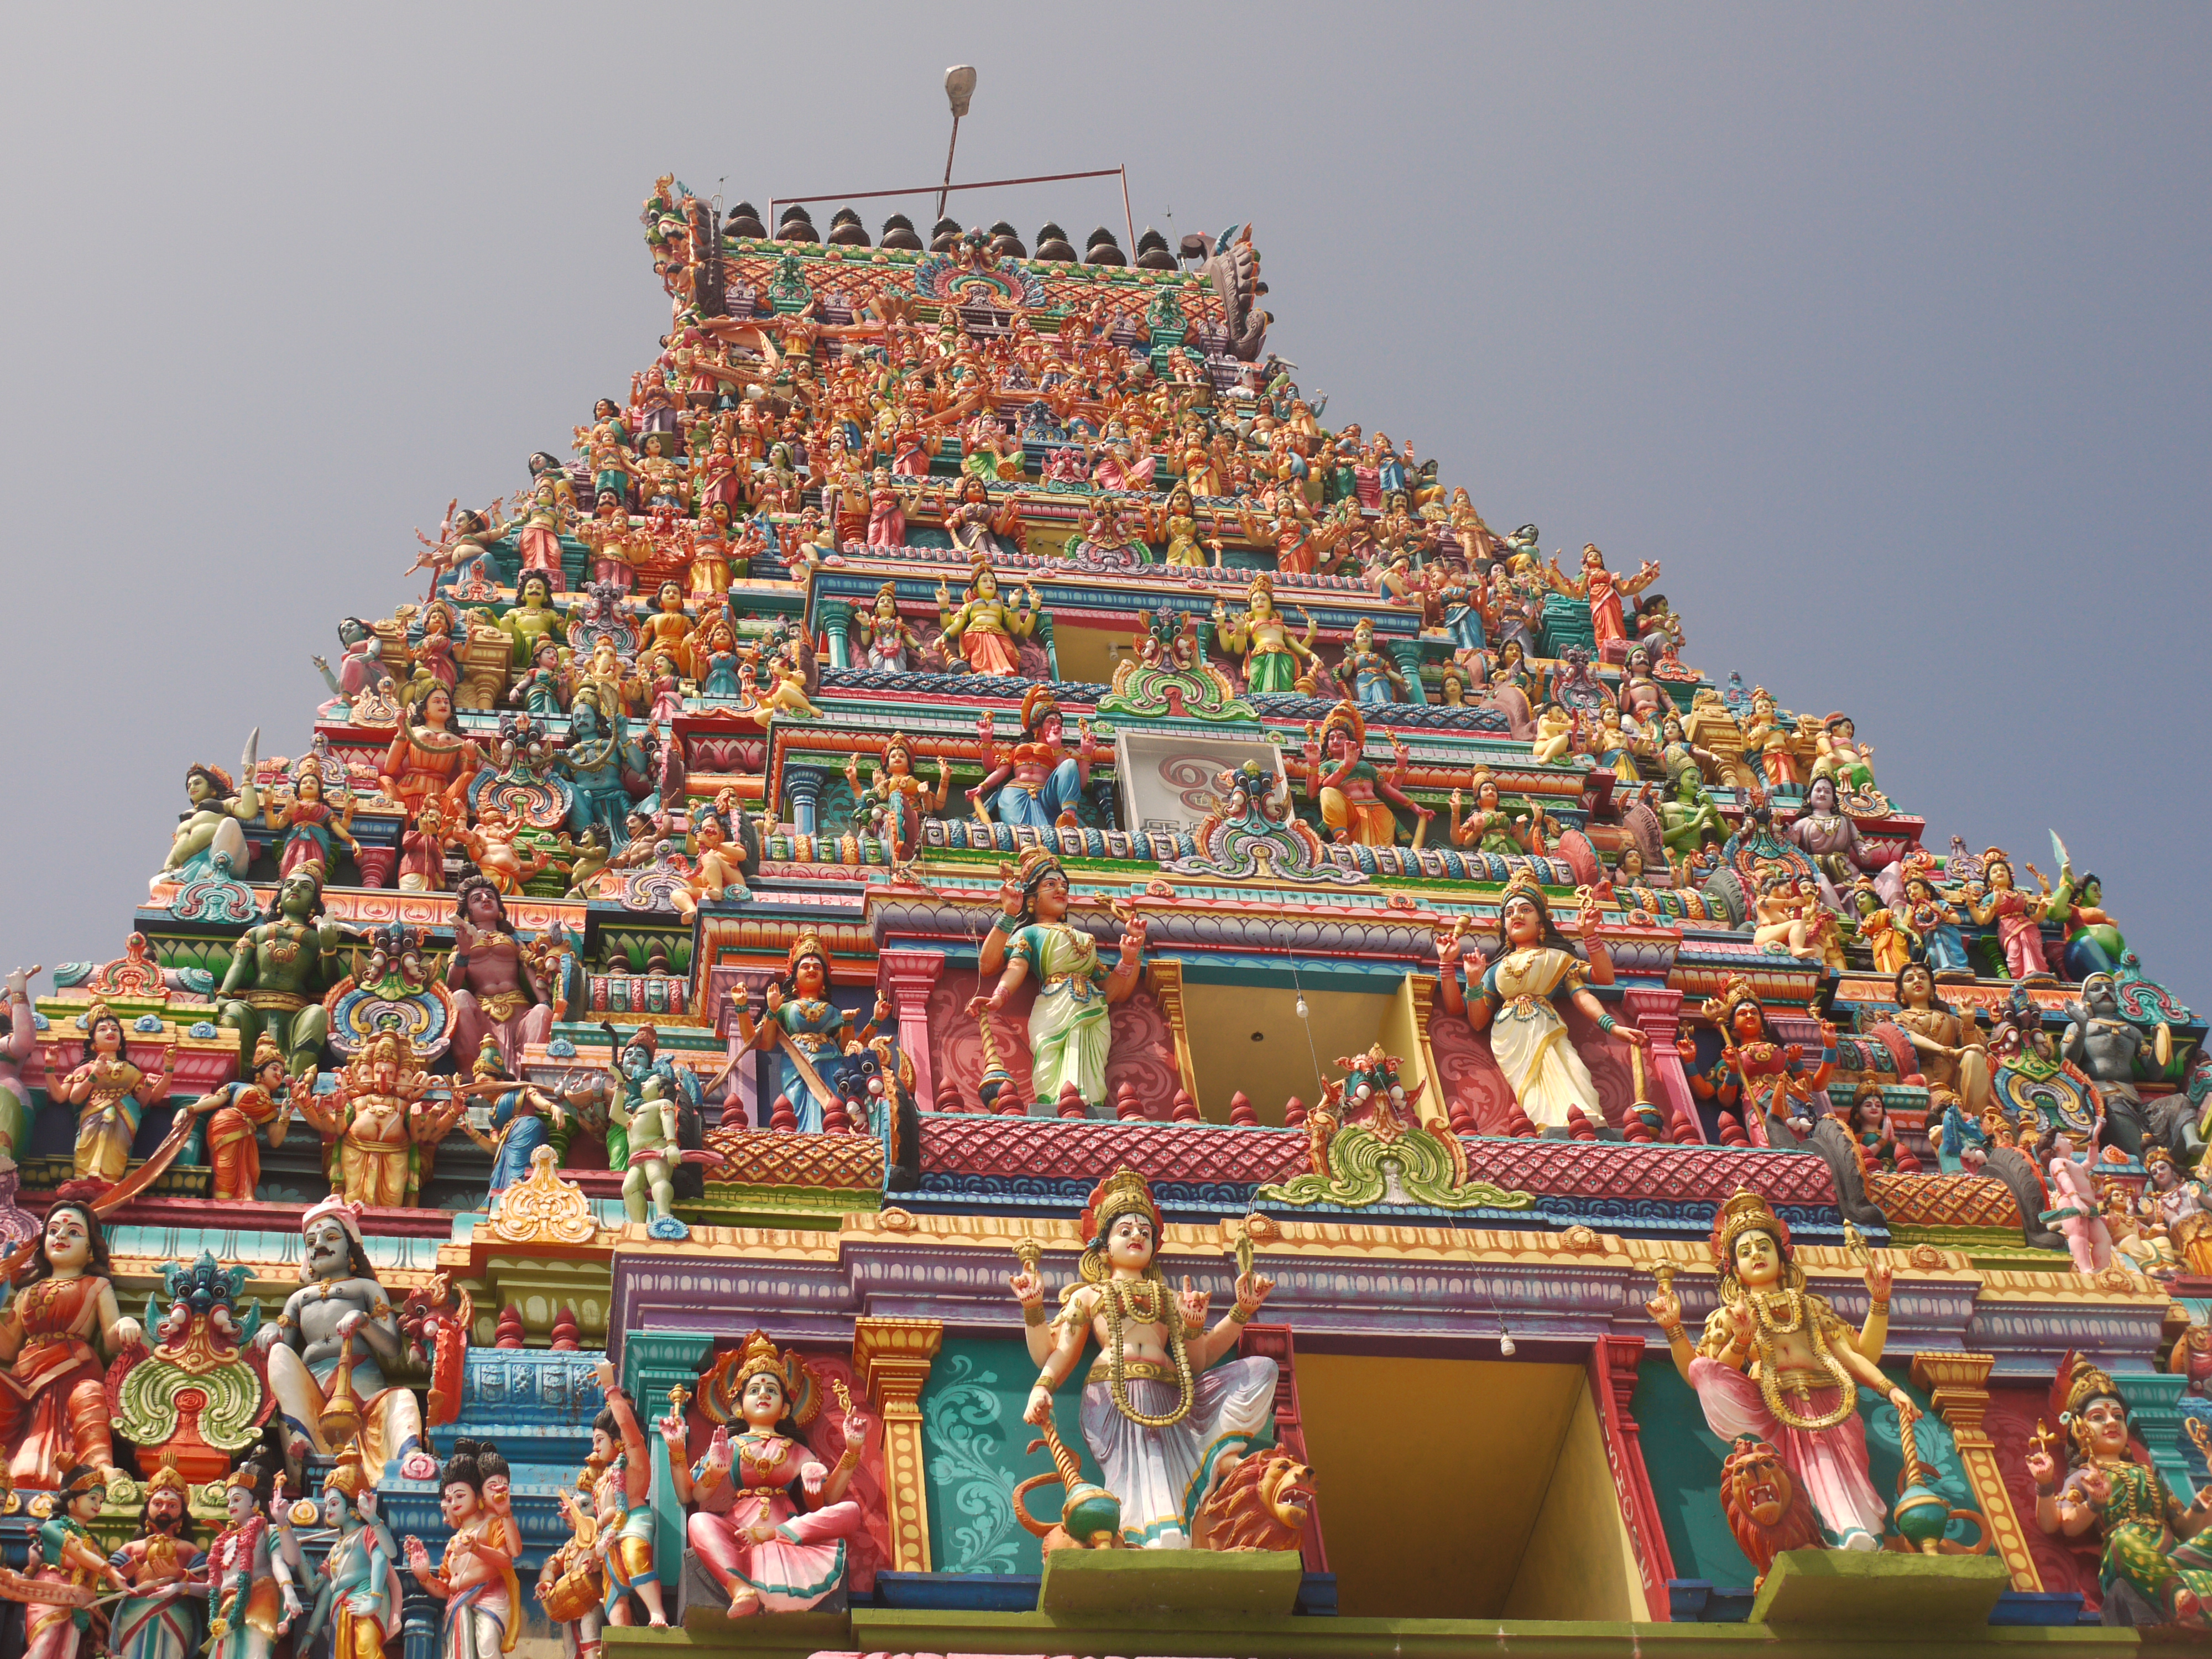 VIDEO Exploring The Temple Of Naagadeepa Vihara, Nainativu, Sri ...